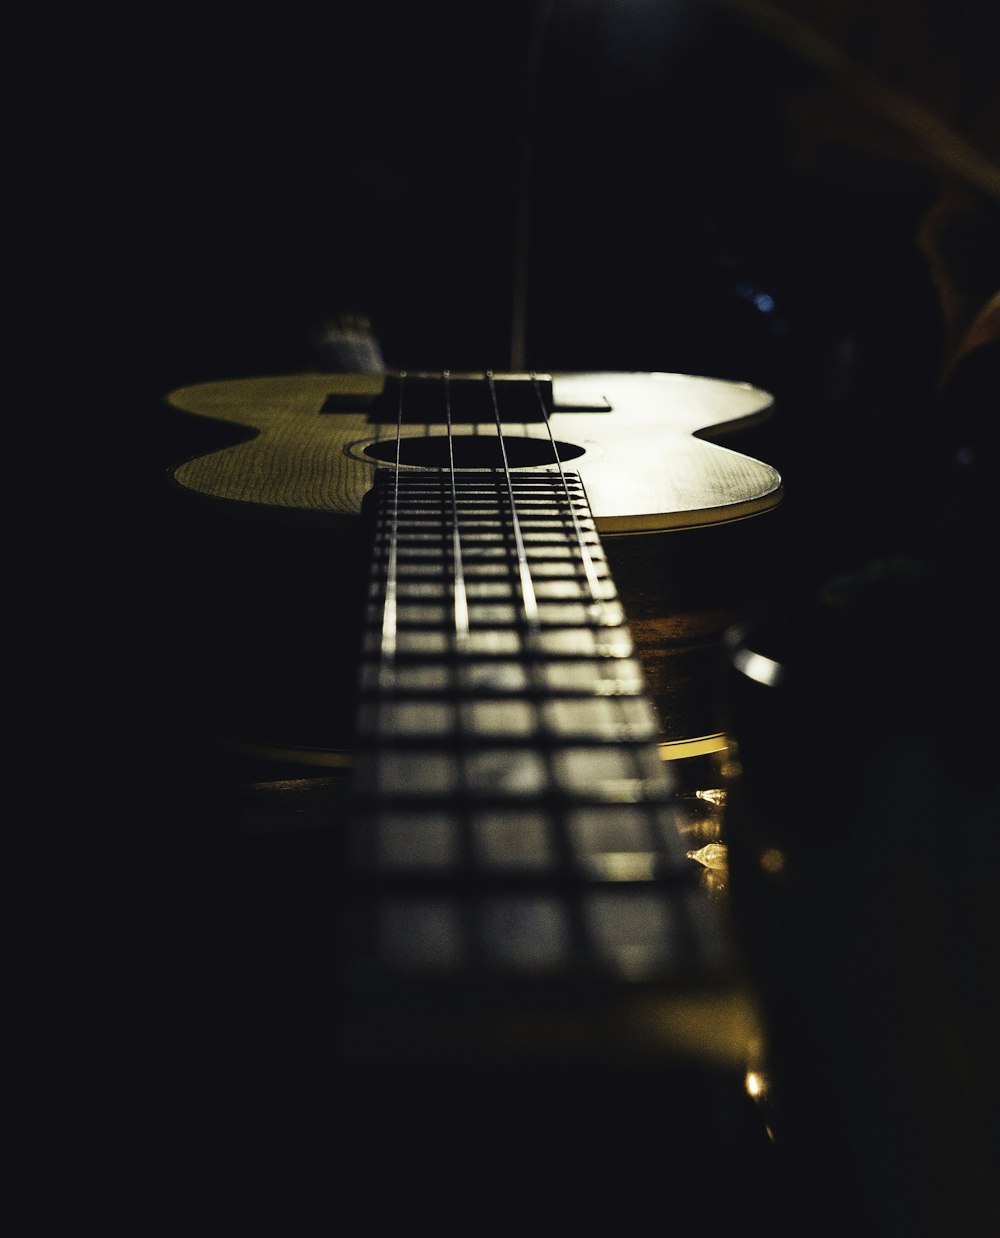 ukulele on wooden surface